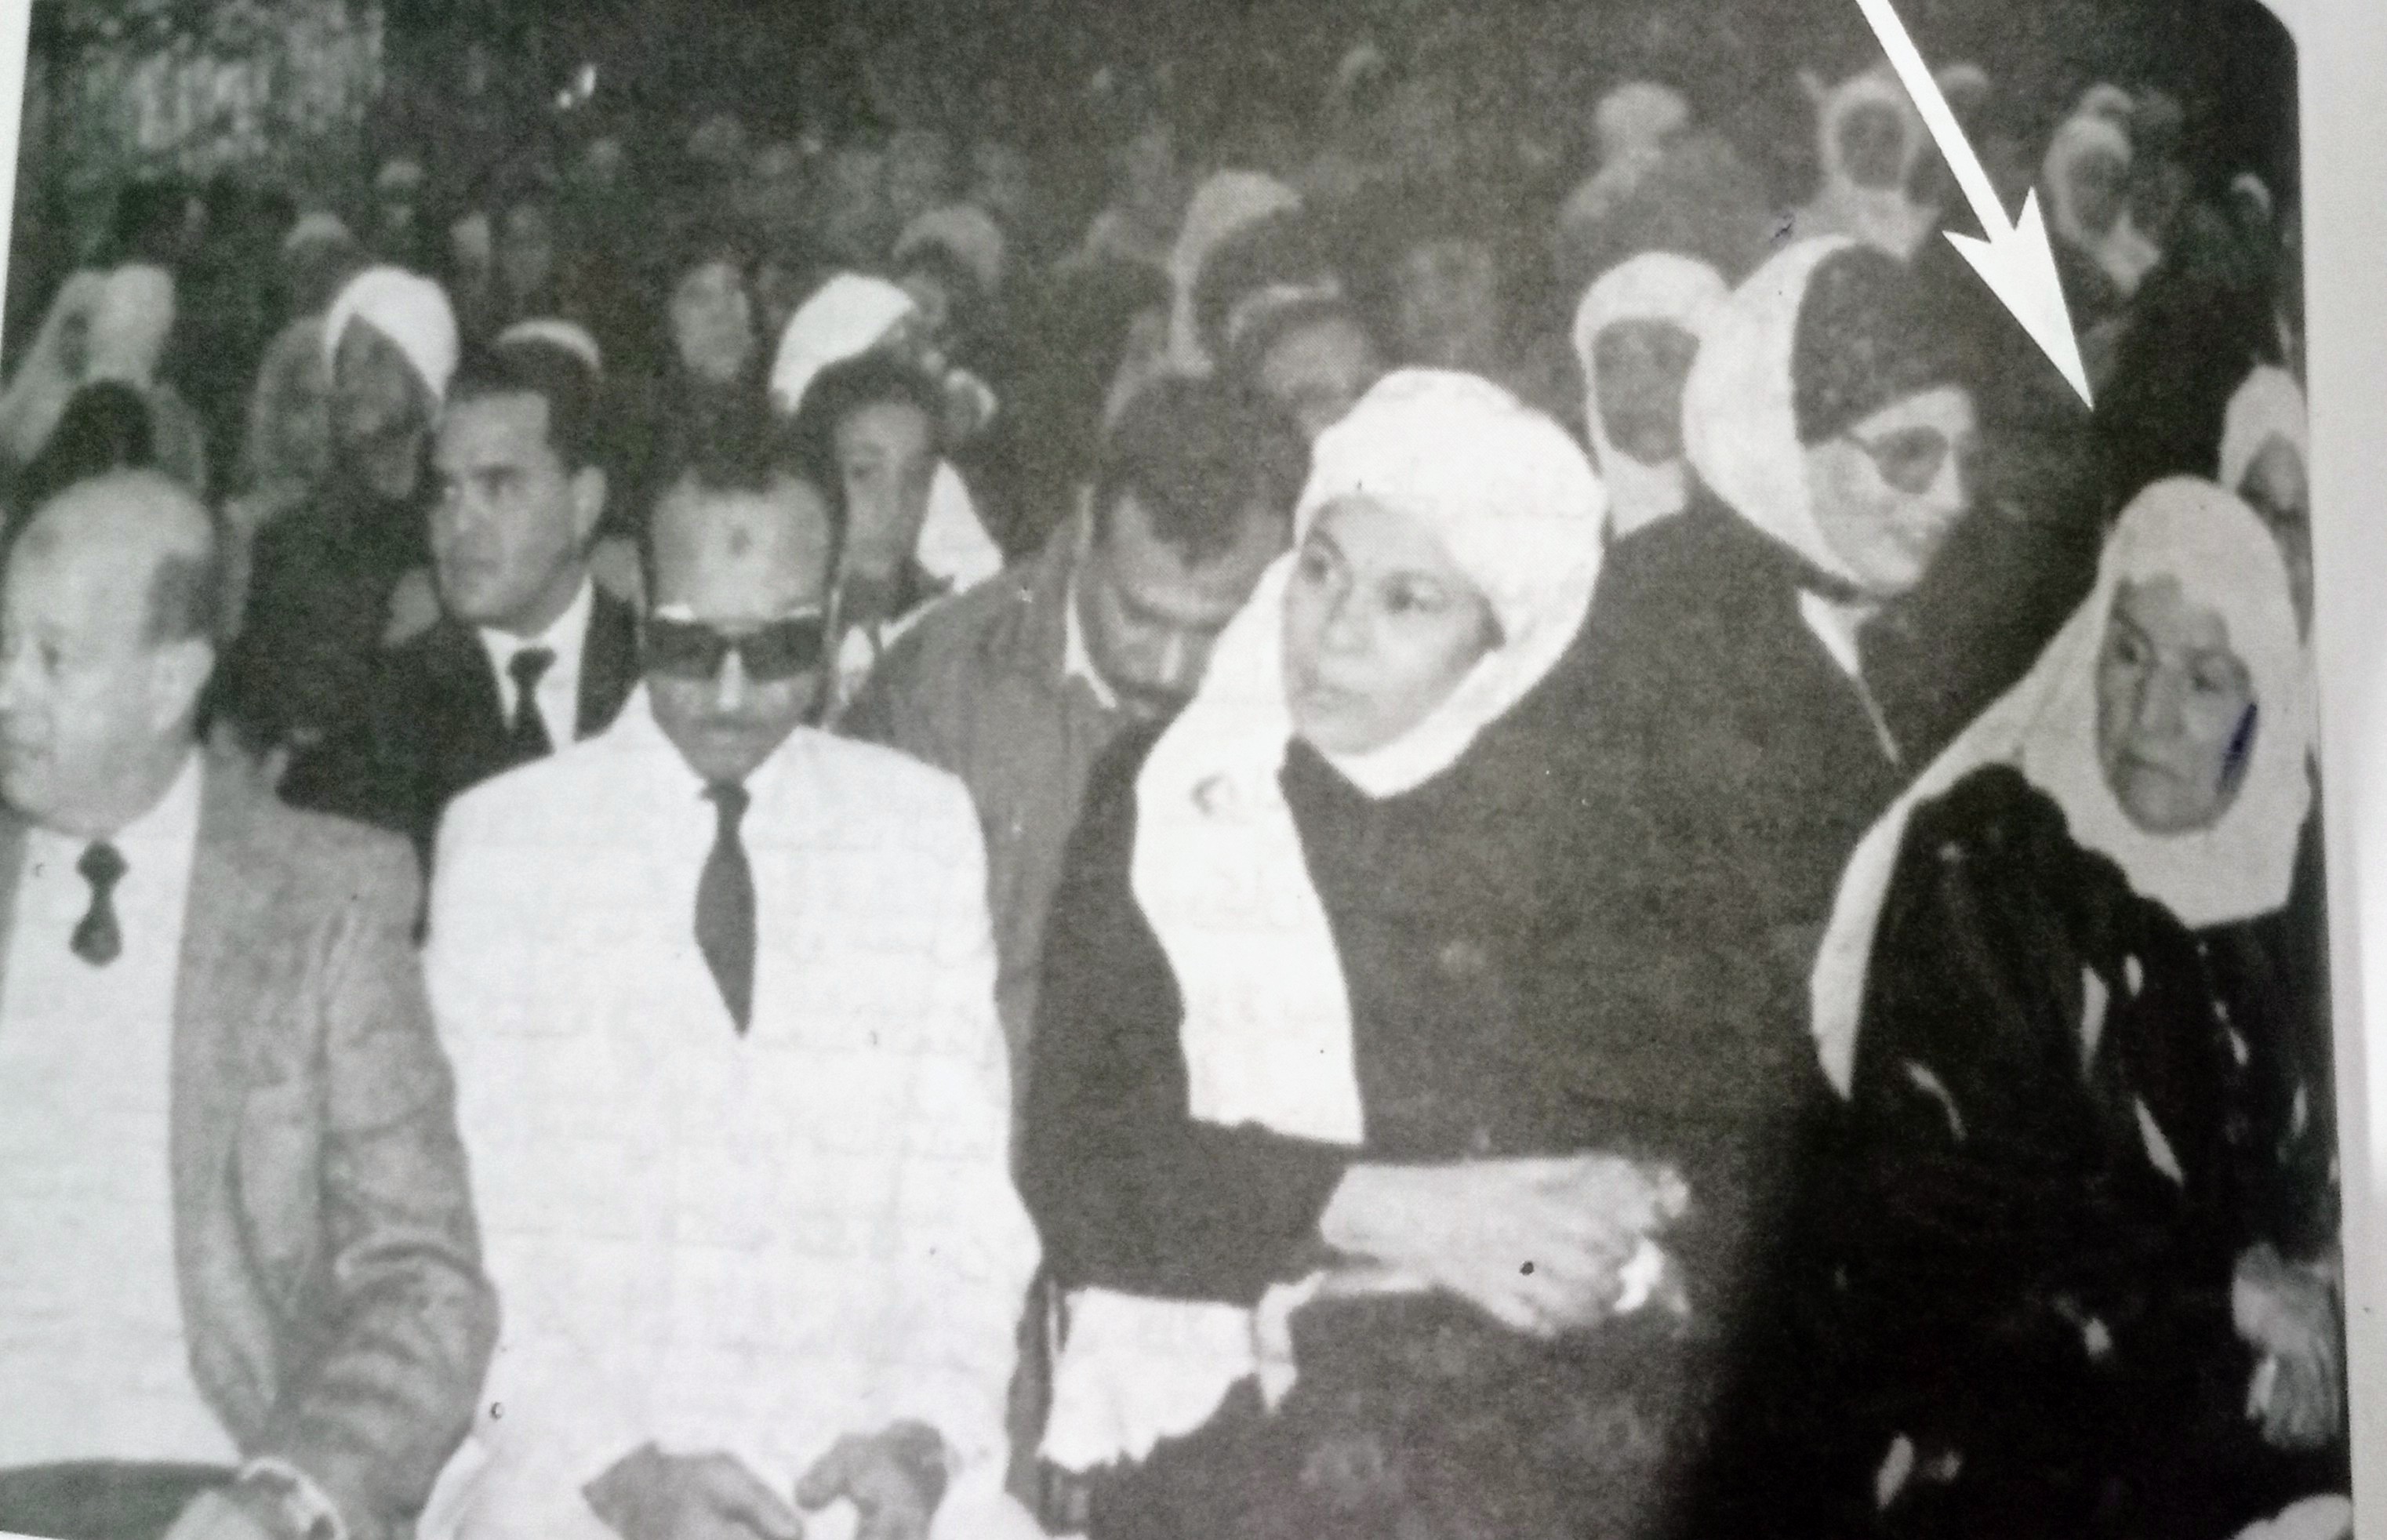 البطلة فتحية الأخرس الشهيرة بأم على تجلس يمين الفدائى محمد مهران